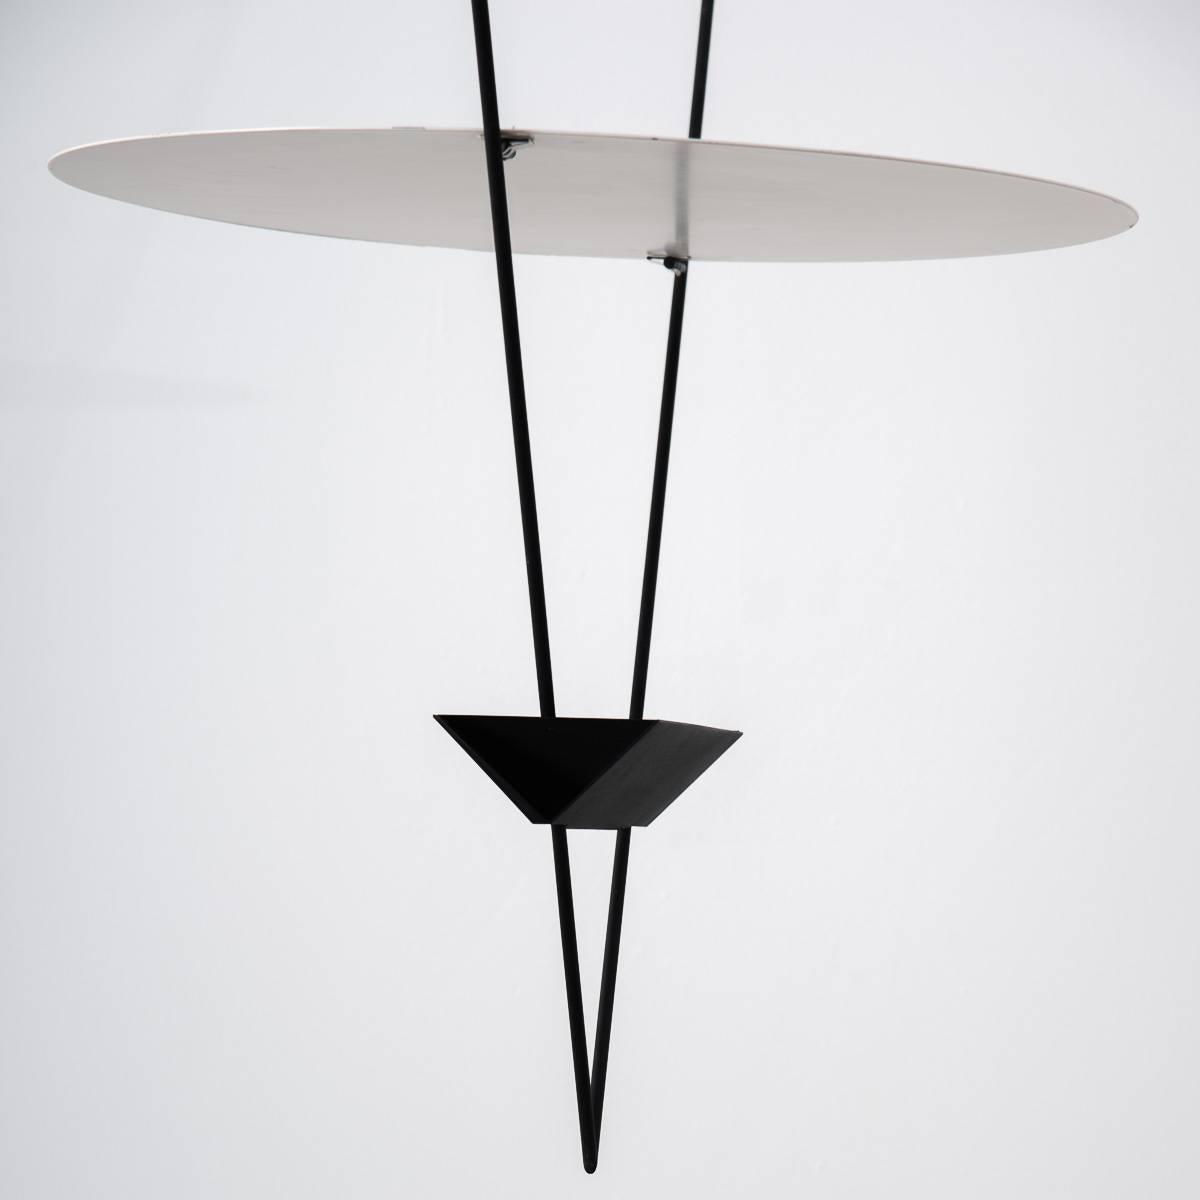 Italian Mario Botta Inverted Triangle Lamp, Artemide, 1985